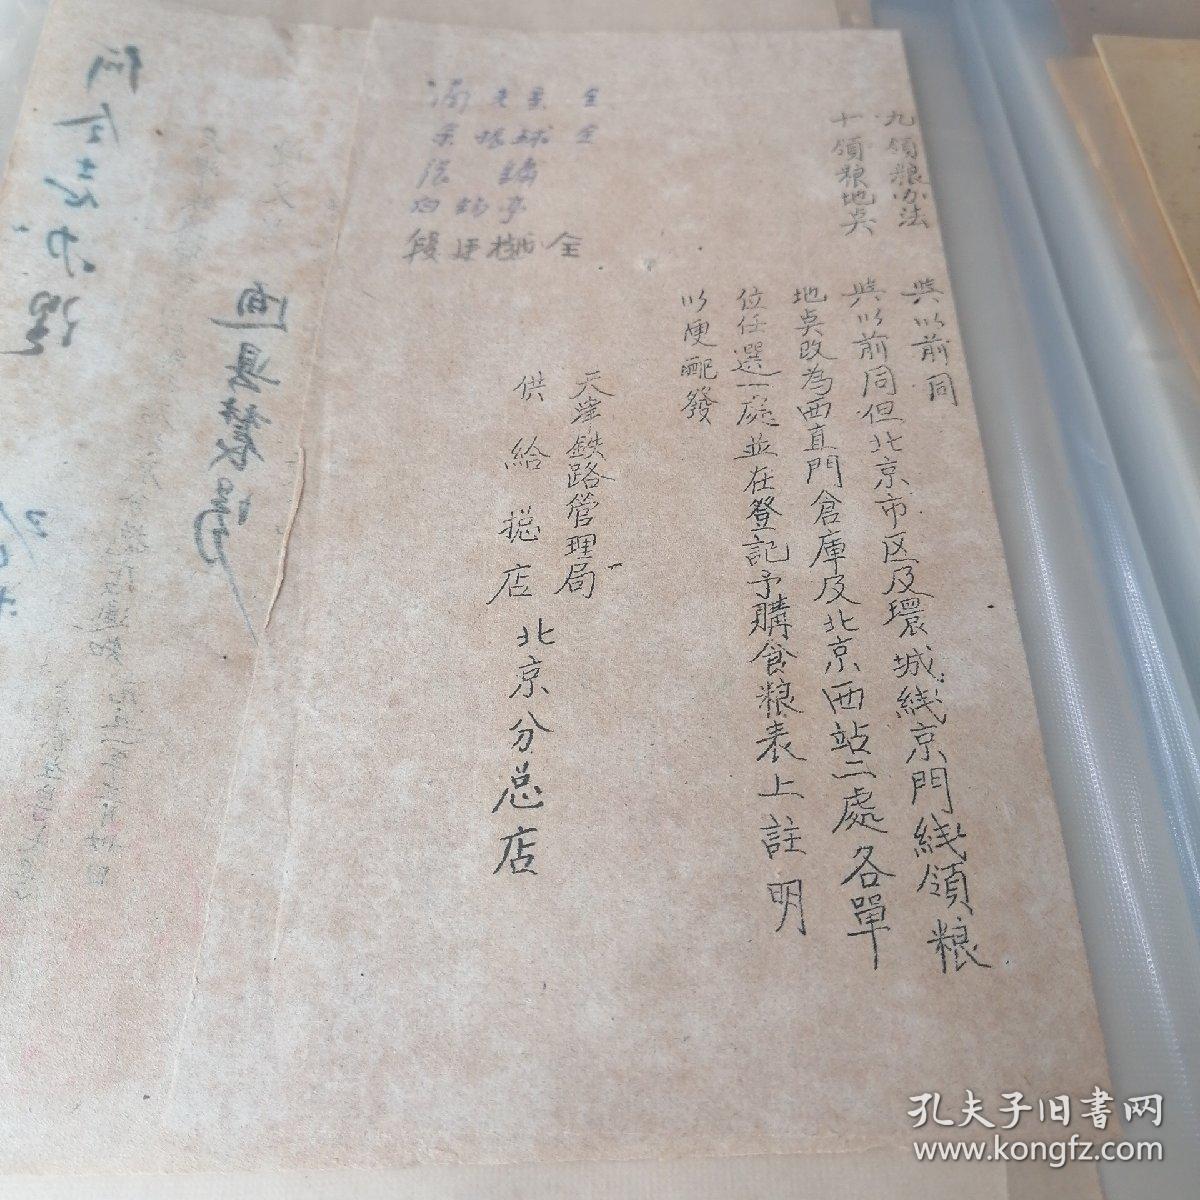 天津铁路管理局供给总店北京分总店通知1951年